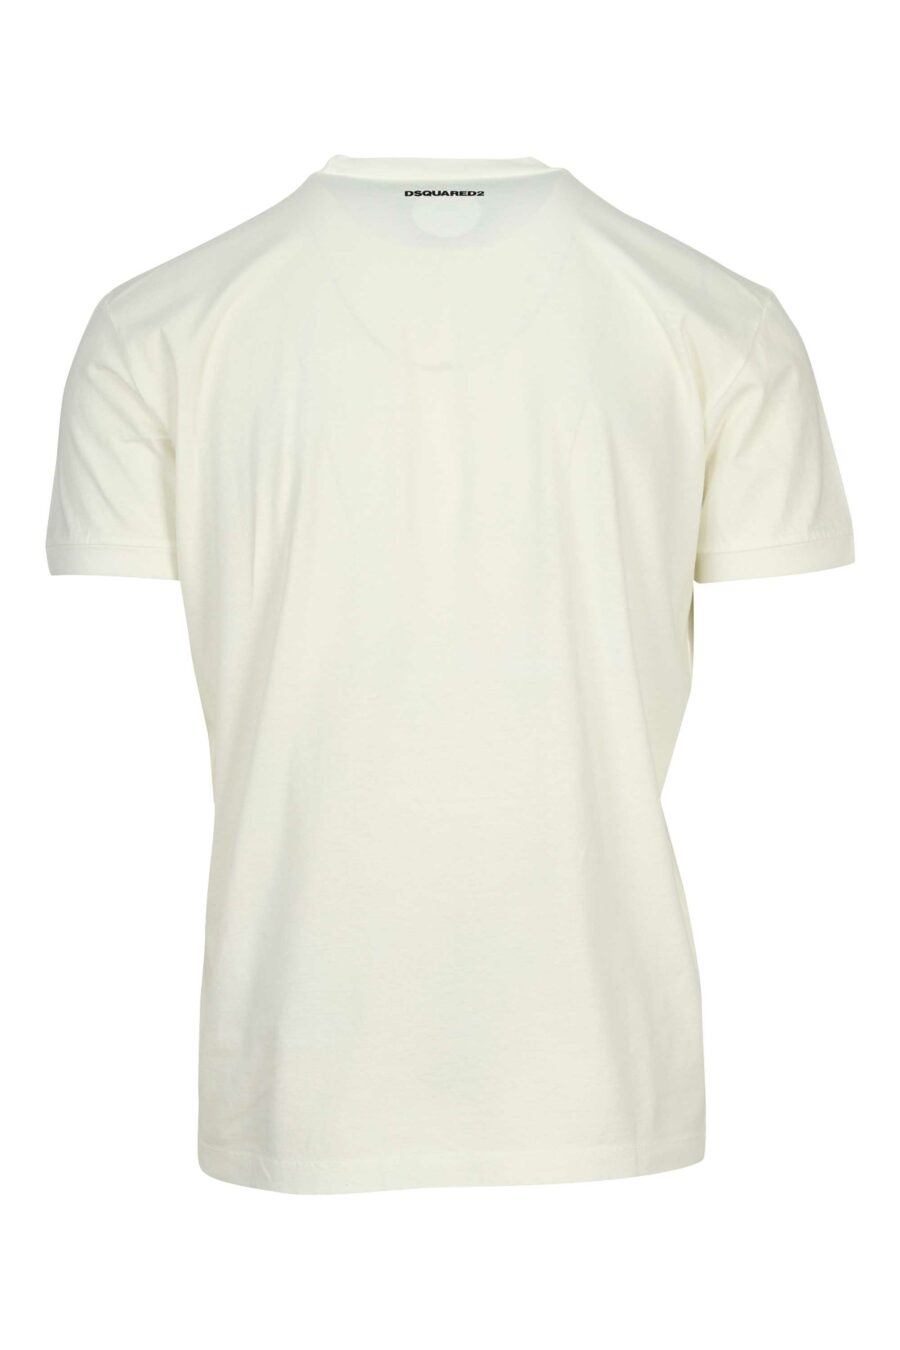 Camiseta blanca con maxilogo corazón y playa - 8054148553890 1